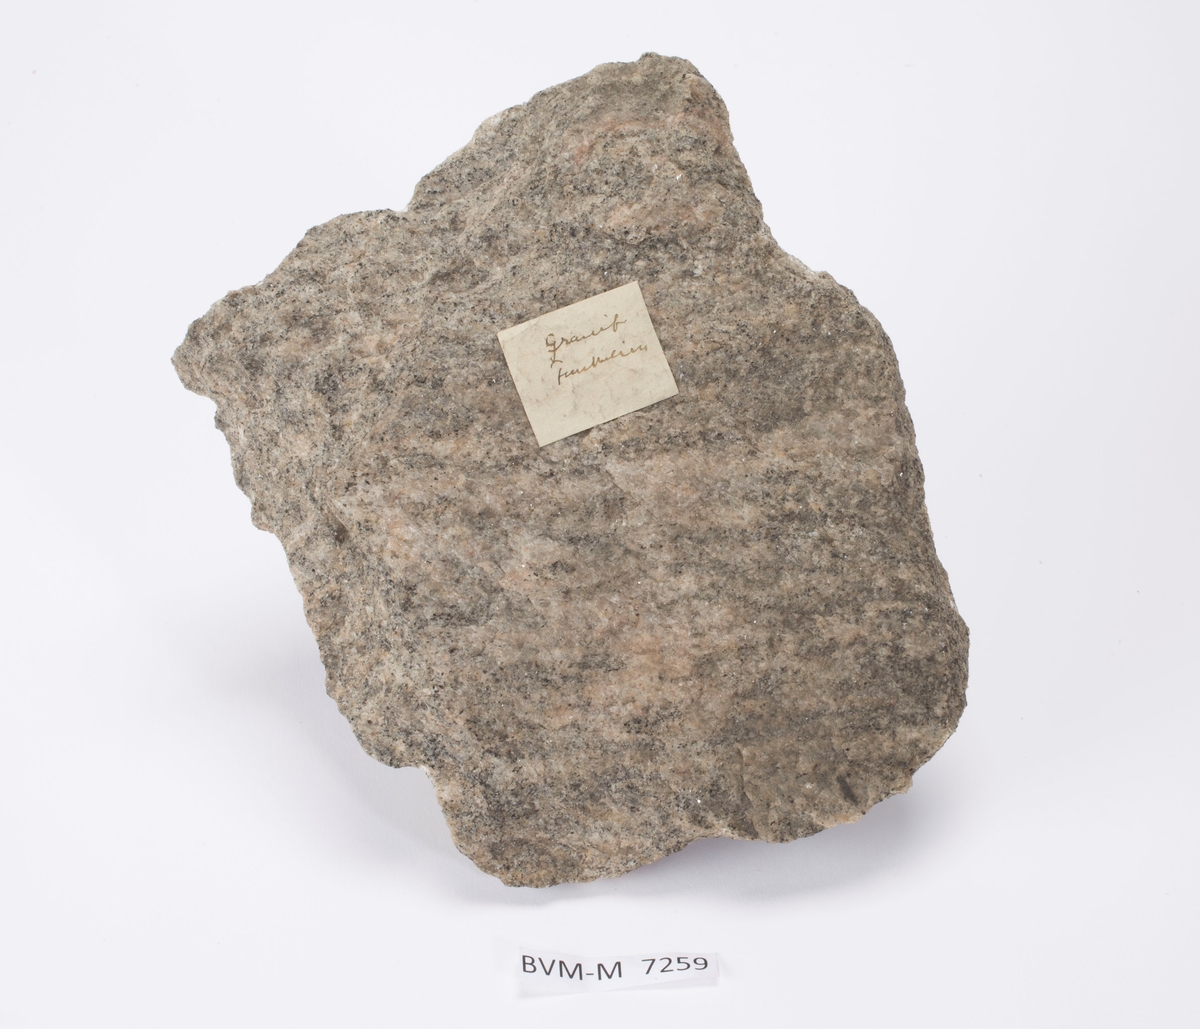 Etikett på prøve:
Granit
Funkelien